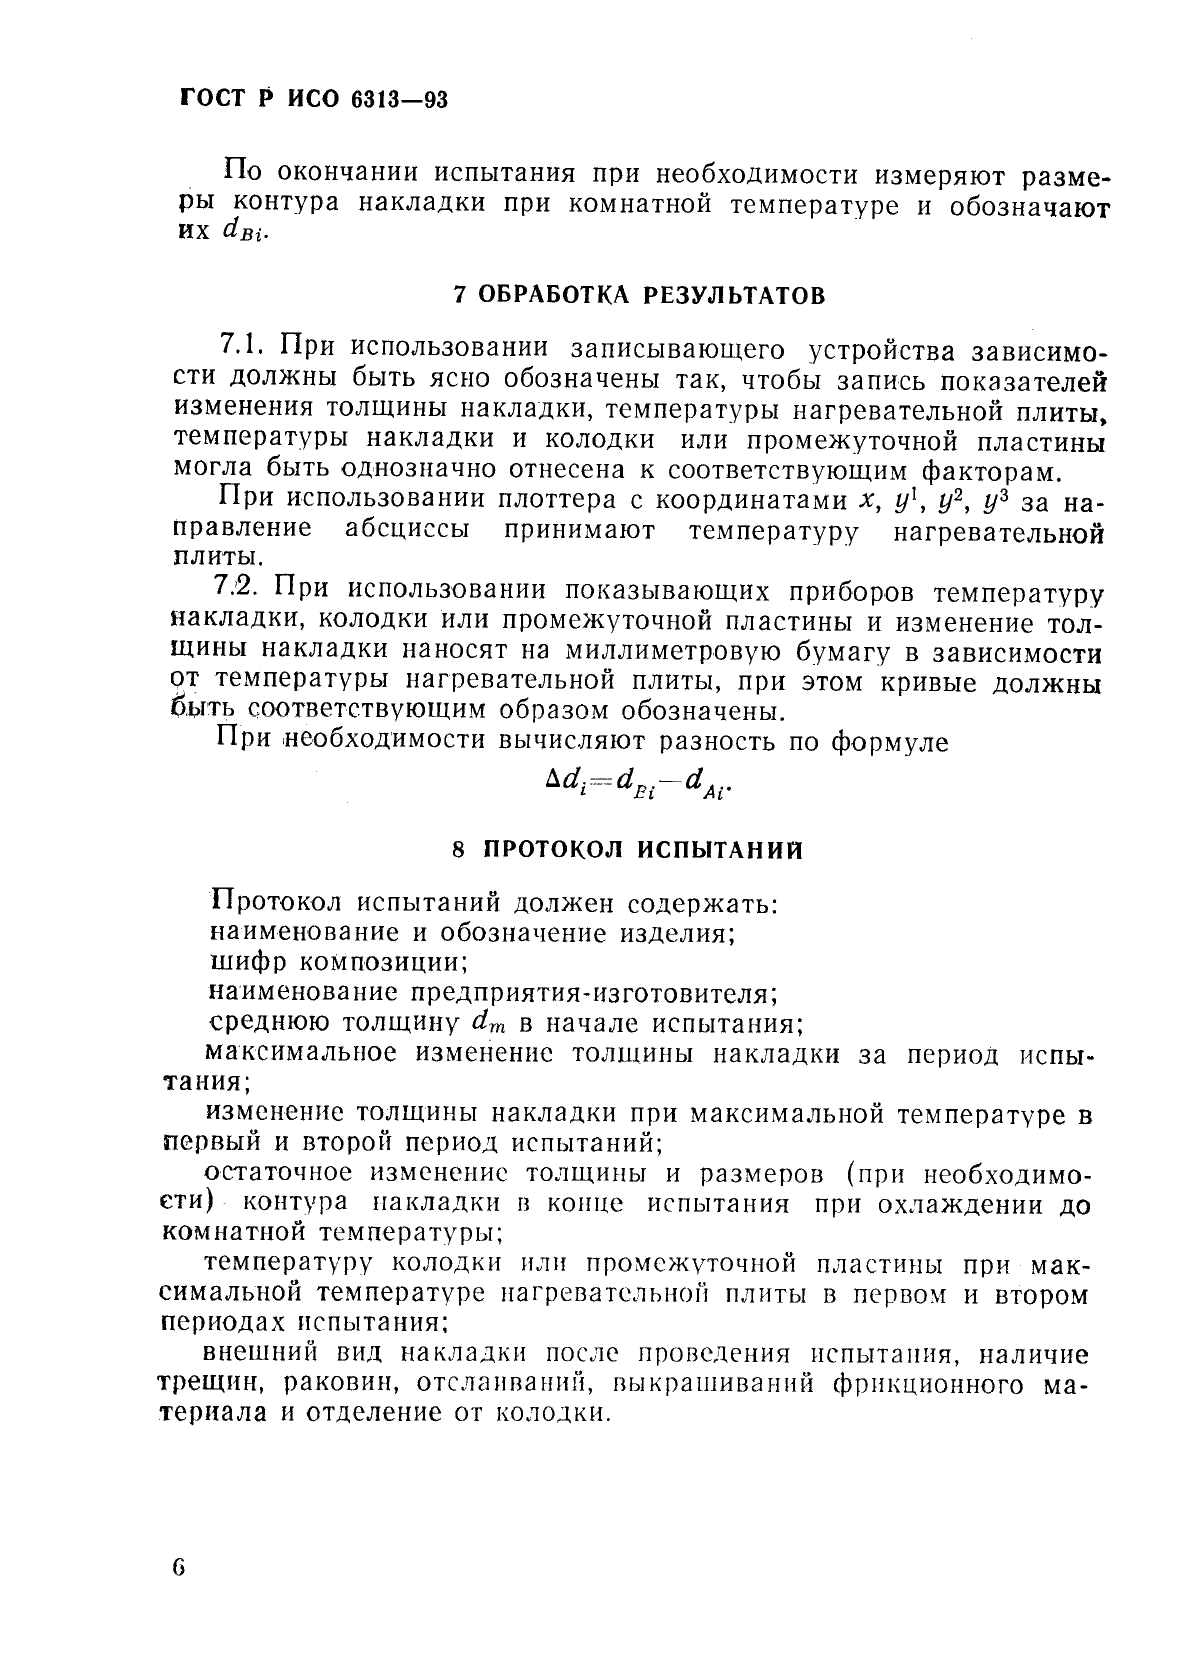 ГОСТ Р ИСО 6313-93